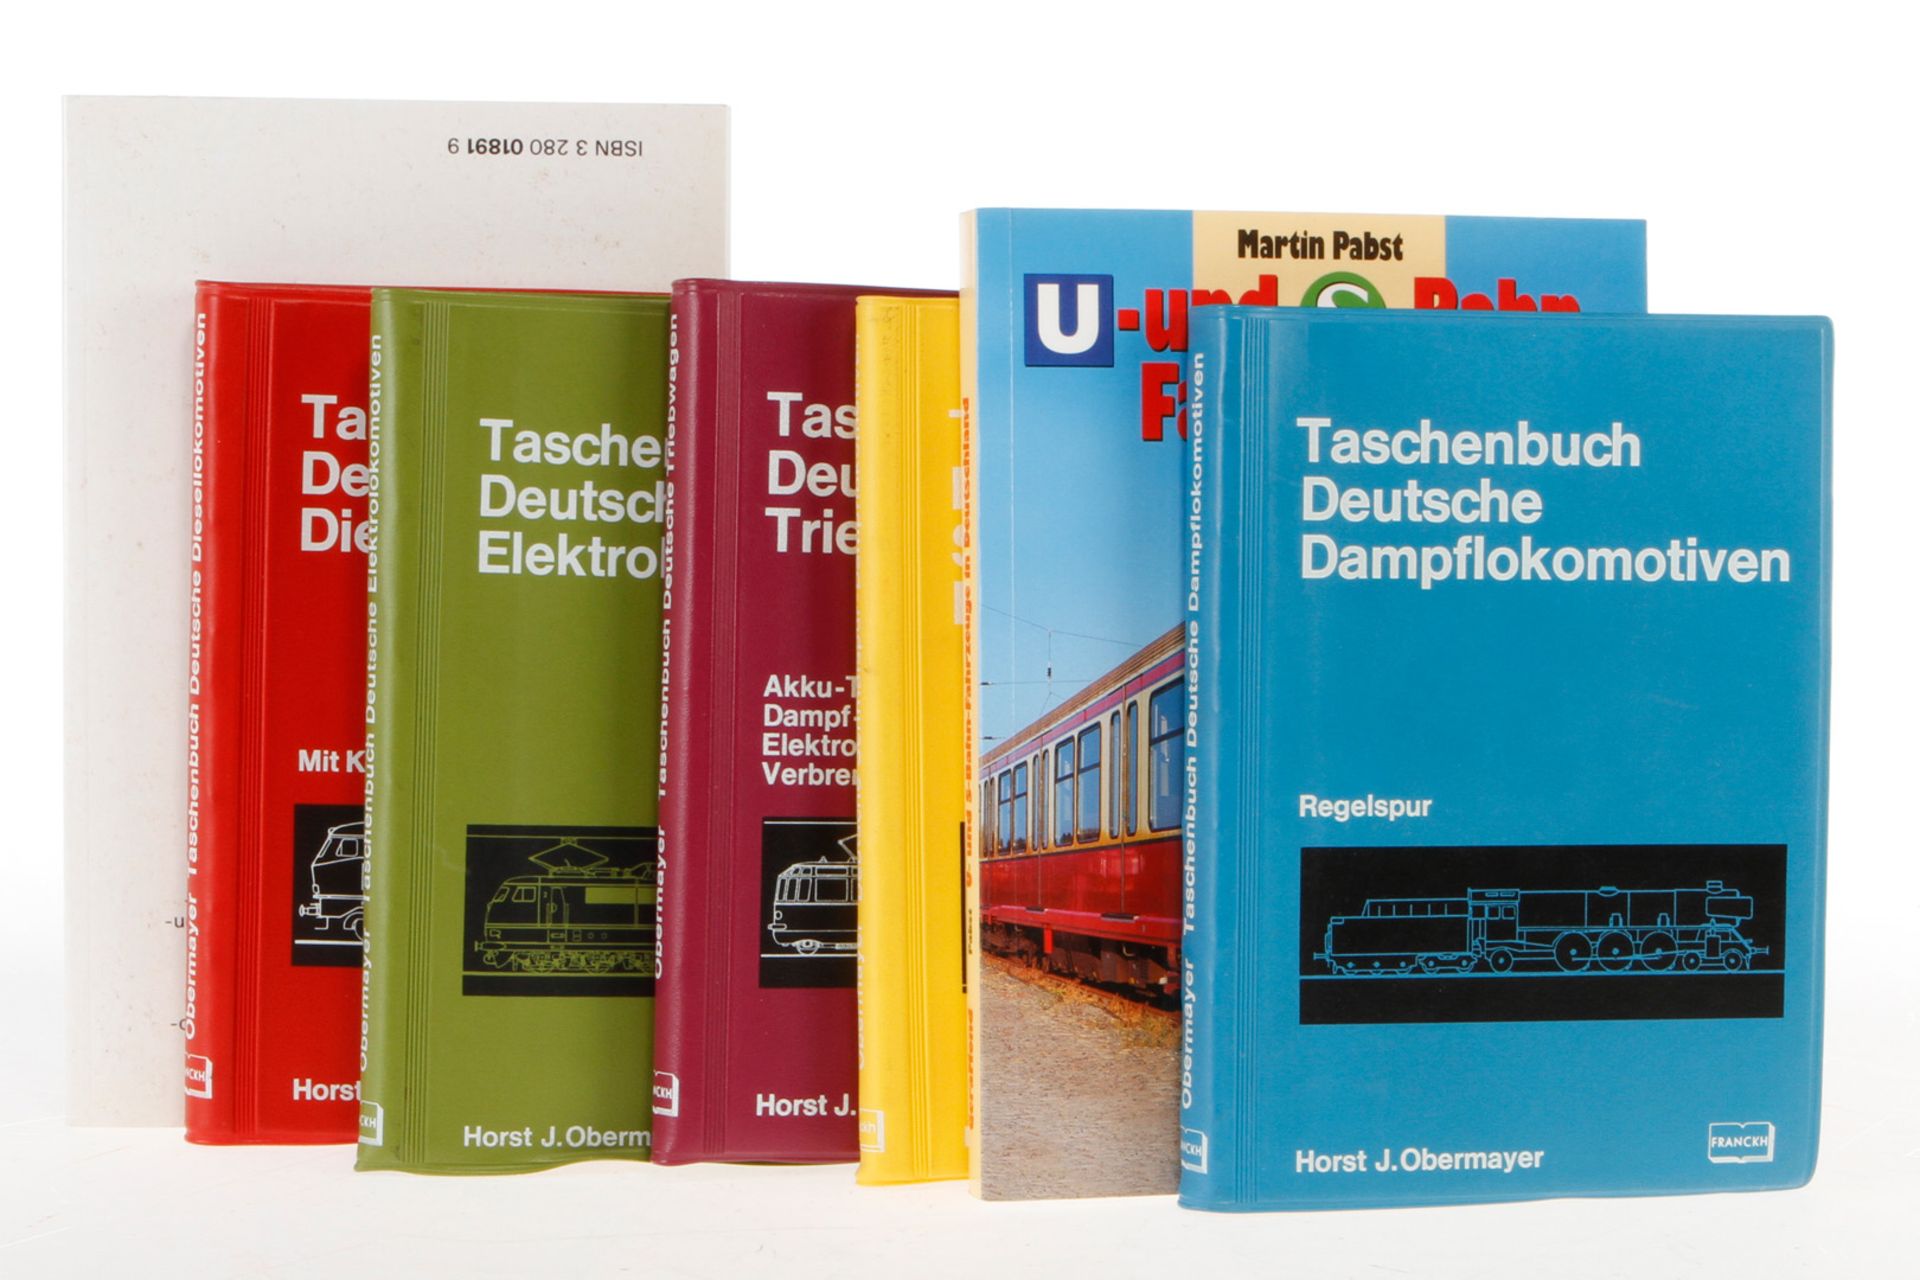 7 Eisenbahn-Bücher, daunter “Taschenbuch deutsche Dampflokomotiven“, “Taschenbuch deutsche